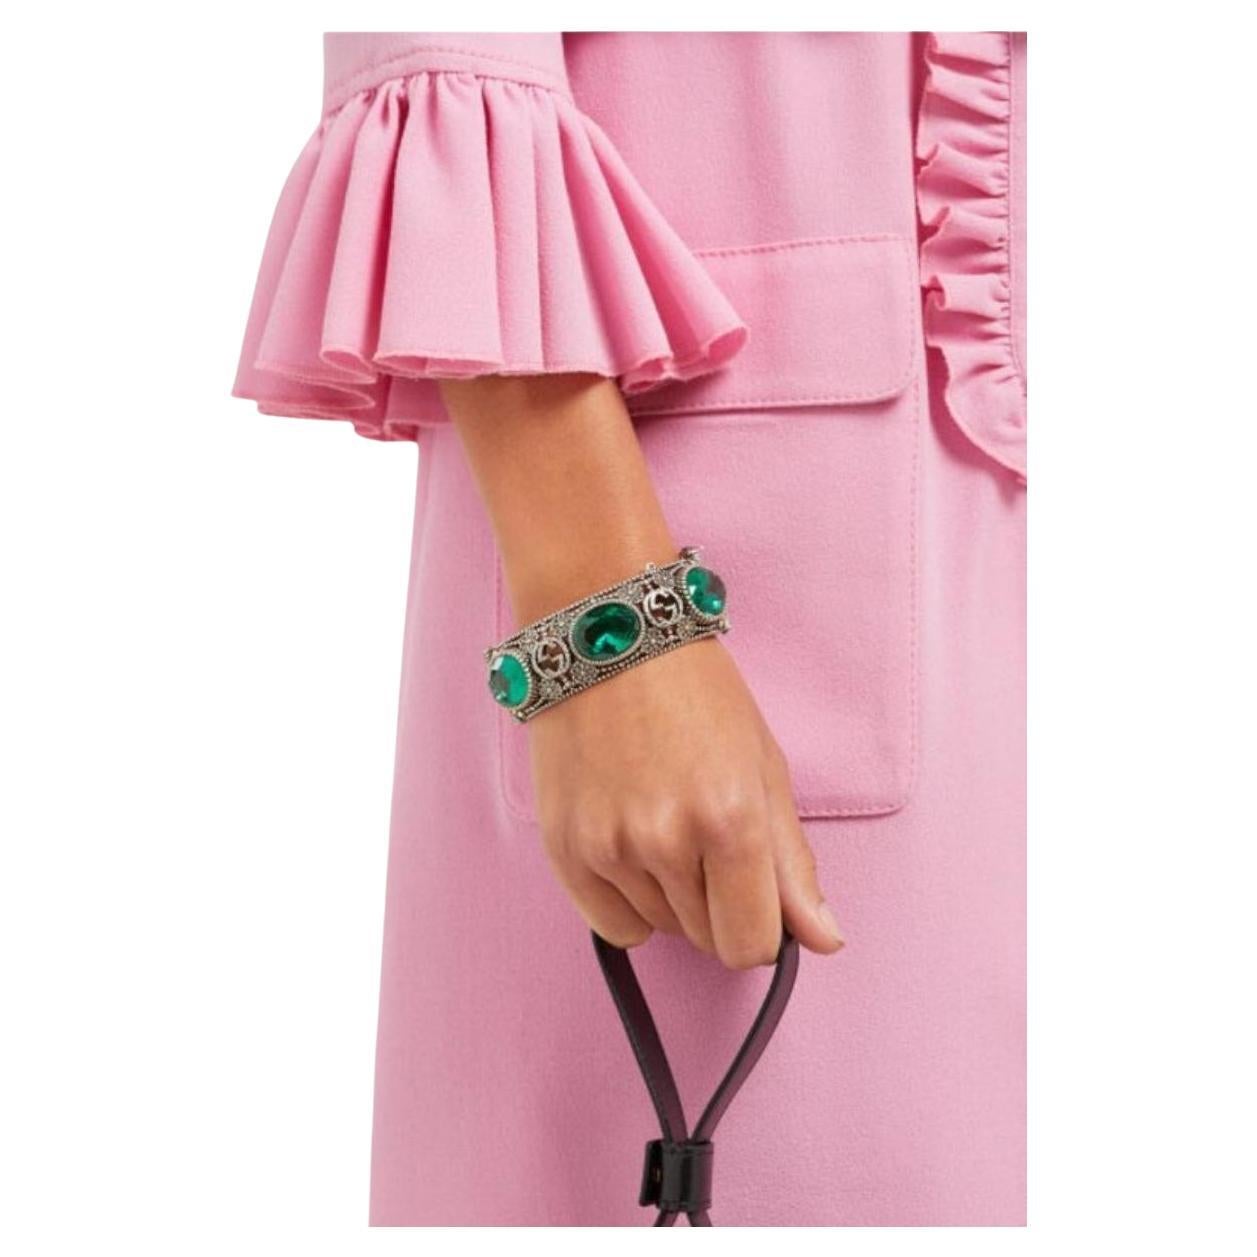 Folgen Sie uns @runwaycatalog
Das in Italien gefertigte Armband mit dem namensgebenden Blumenmotiv - einer alten Tradition des Hauses - ist mit facettierten grünen Kristallen besetzt und wird mit einem Bajonettverschluss mit Tigerkopf verschlossen,